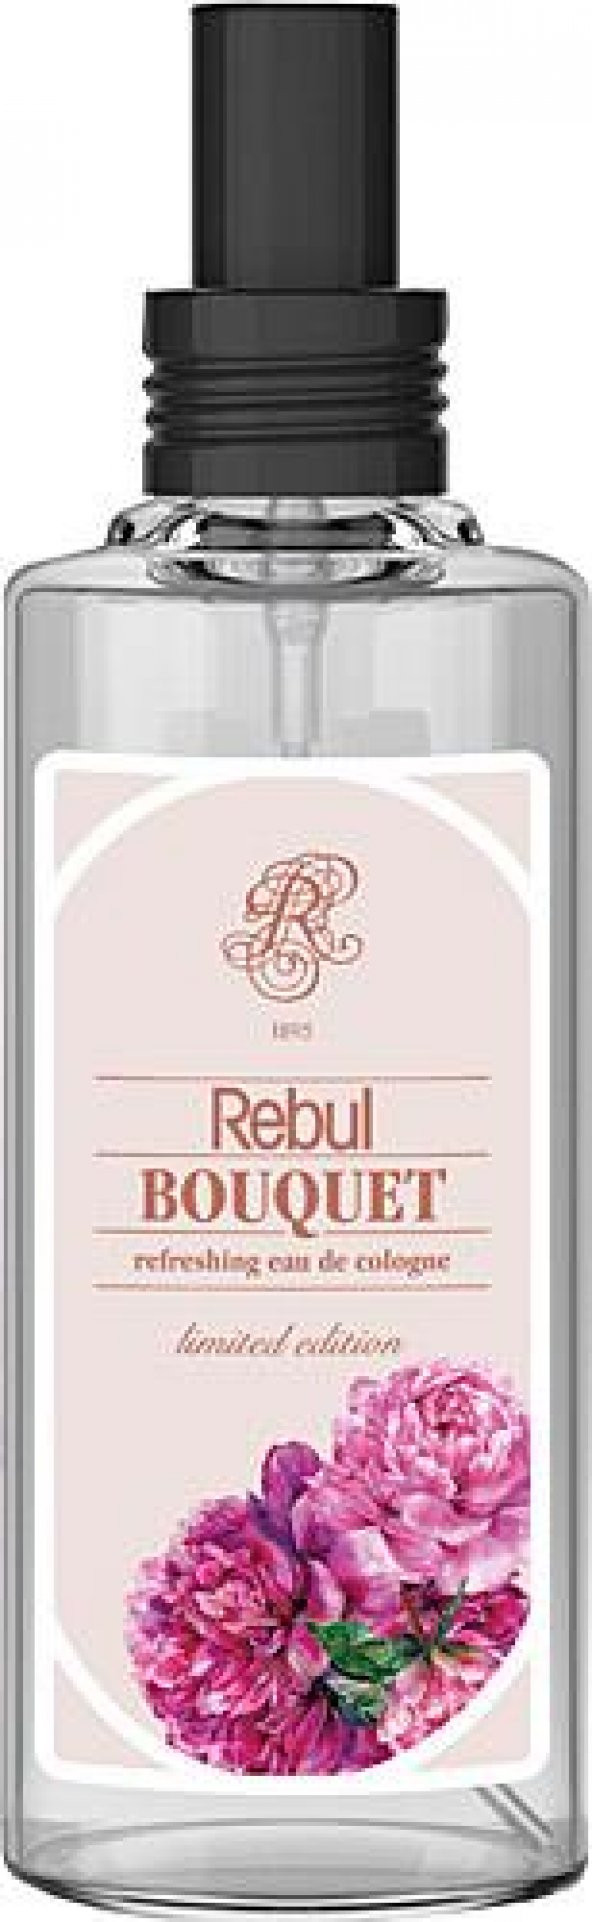 Rebul Bouquet Kolonya 100 ml